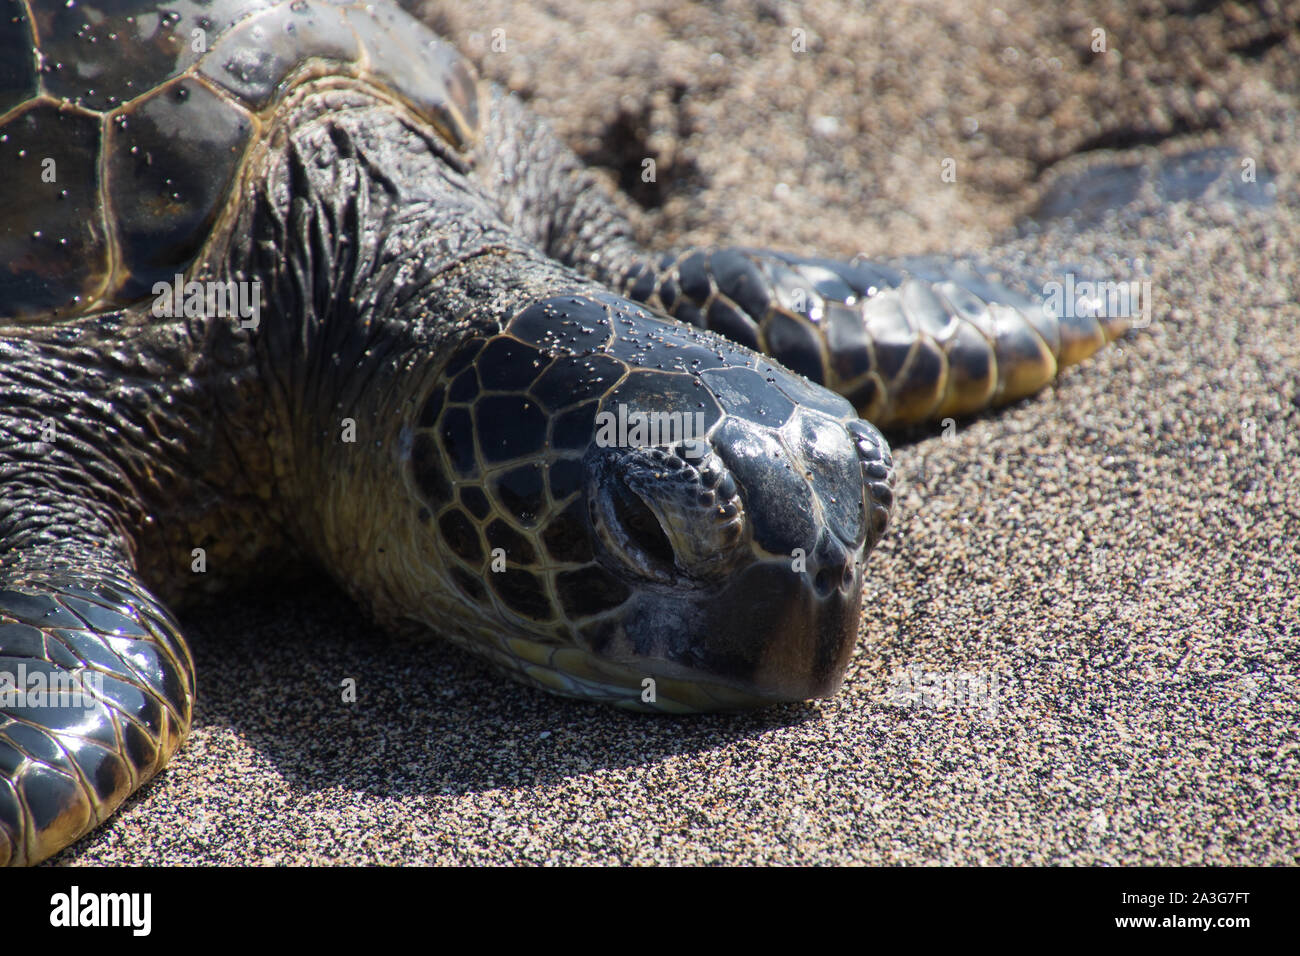 Una tartaruga marina si trova con la sua testa su di una spiaggia di sabbia nera dopo aver strisciato fuori del Pacifico. Foto scattata vicino a Kona sulla Big Island, Hawaii, STATI UNITI D'AMERICA Foto Stock